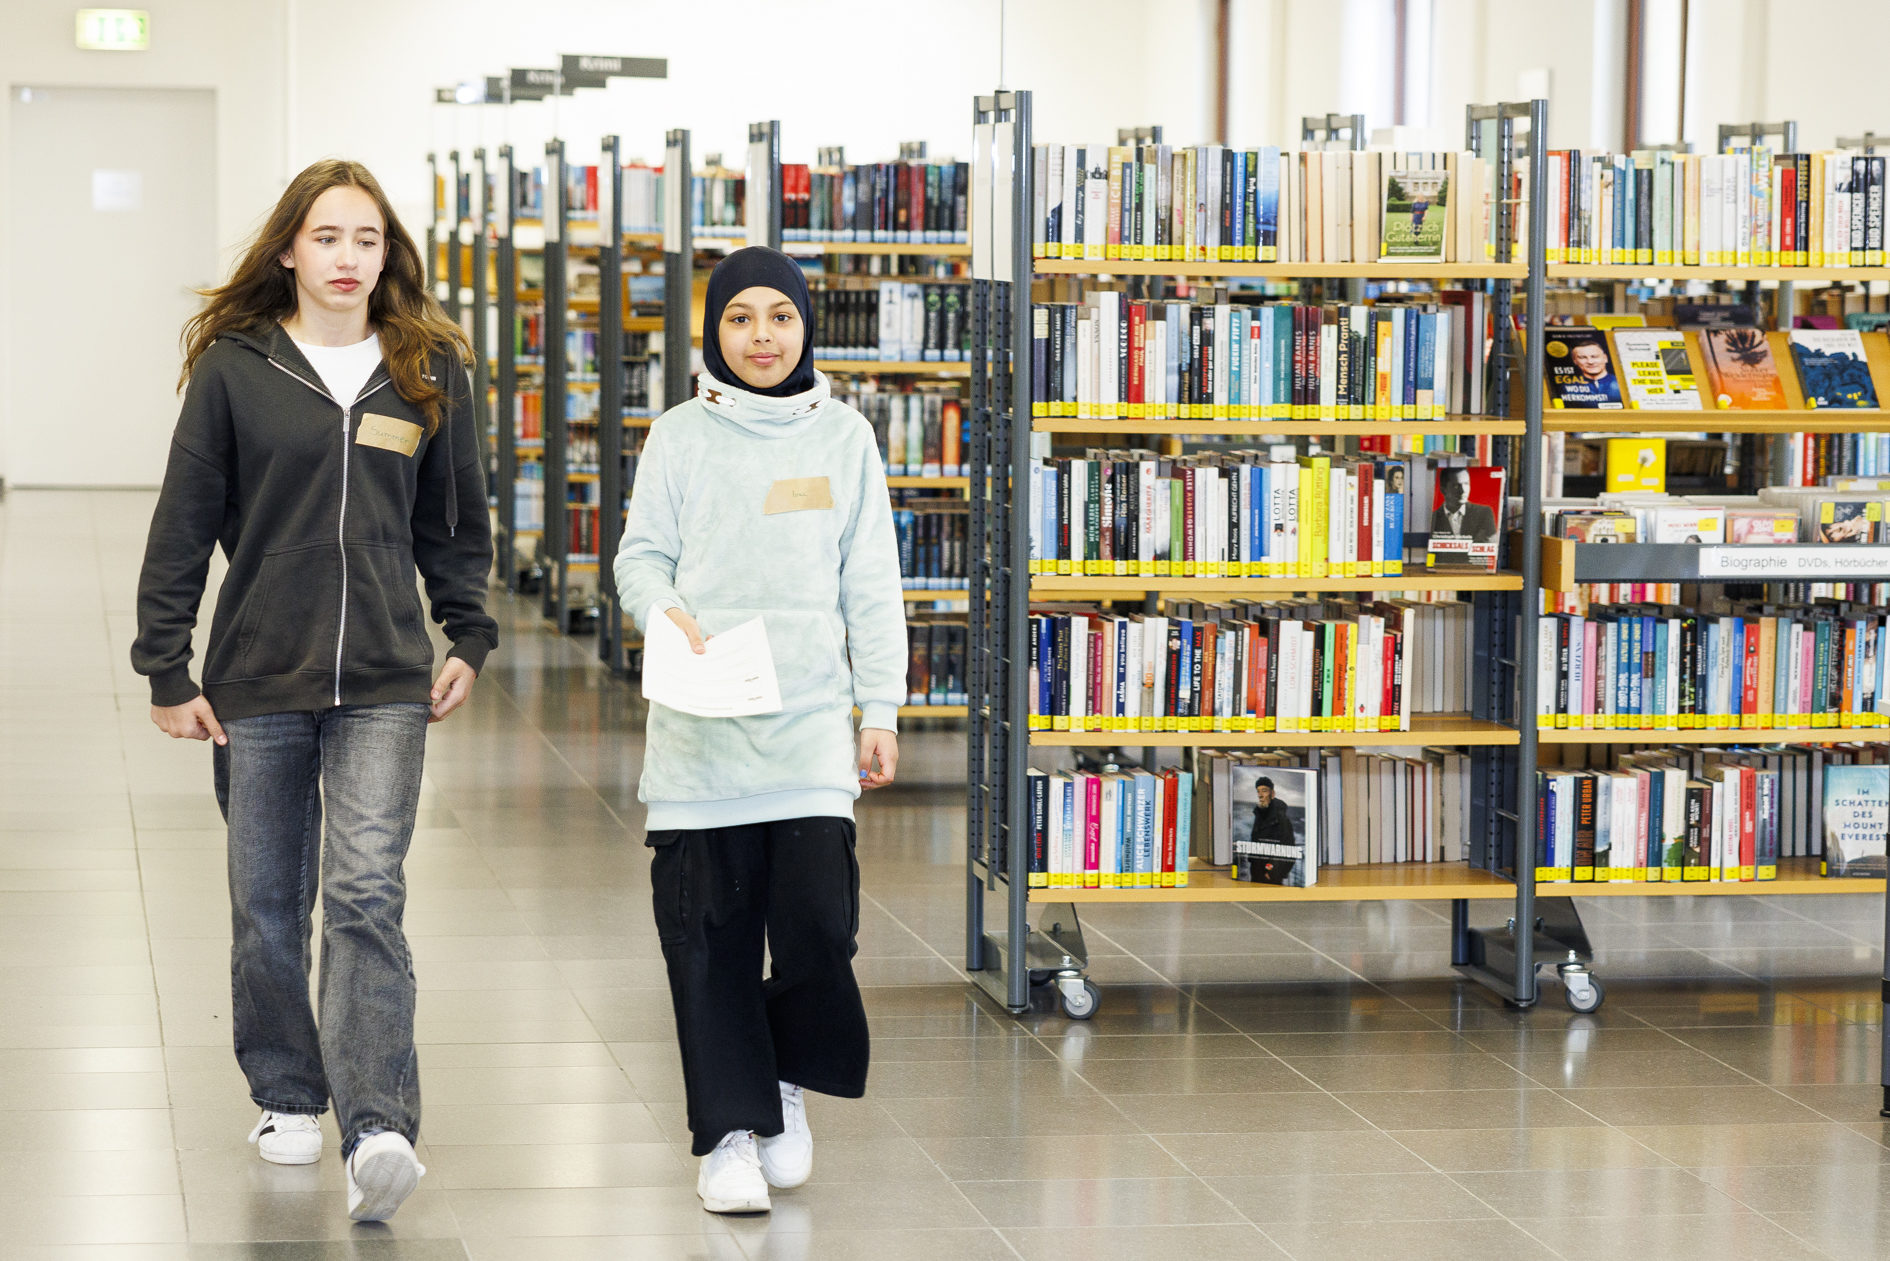 Zukunftstag in der Stadtbibliothek. Zwei Mädchen gehen an Bücherregalen vorbei. (Wird bei Klick vergrößert)